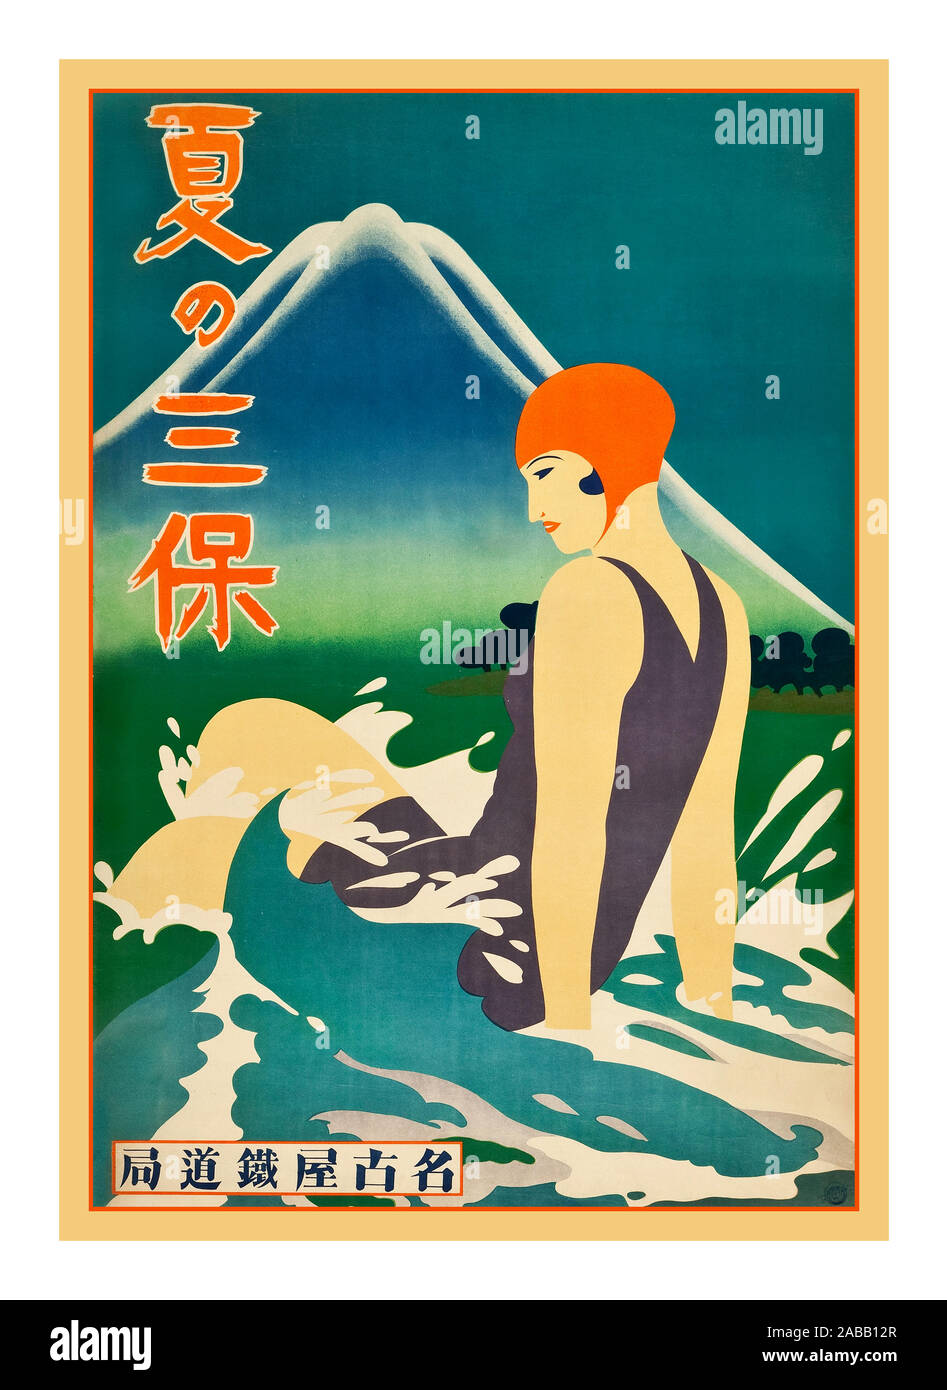 Giappone Giapponese Vintage travel poster da 1930 raffigurante una femmina di spiaggia-goer schizzi nel surf sulla penisola Miho del Giappone del Shizuoka area costiera. Poster di viaggio, 1930s. Foto Stock